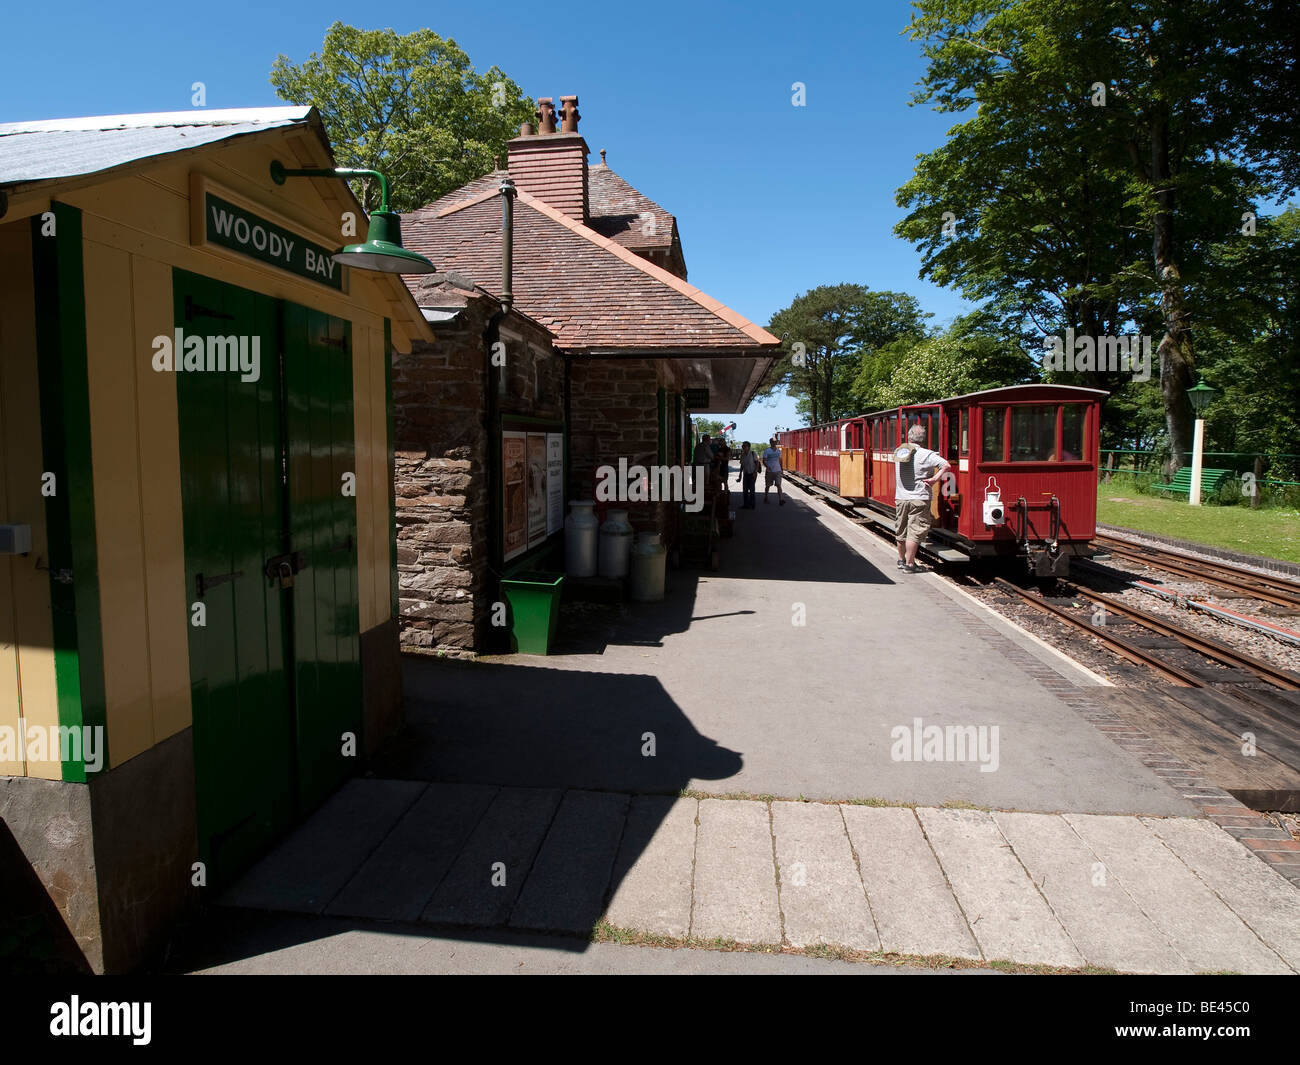 lynton and barnstaple railway woody bay station Stock Photo